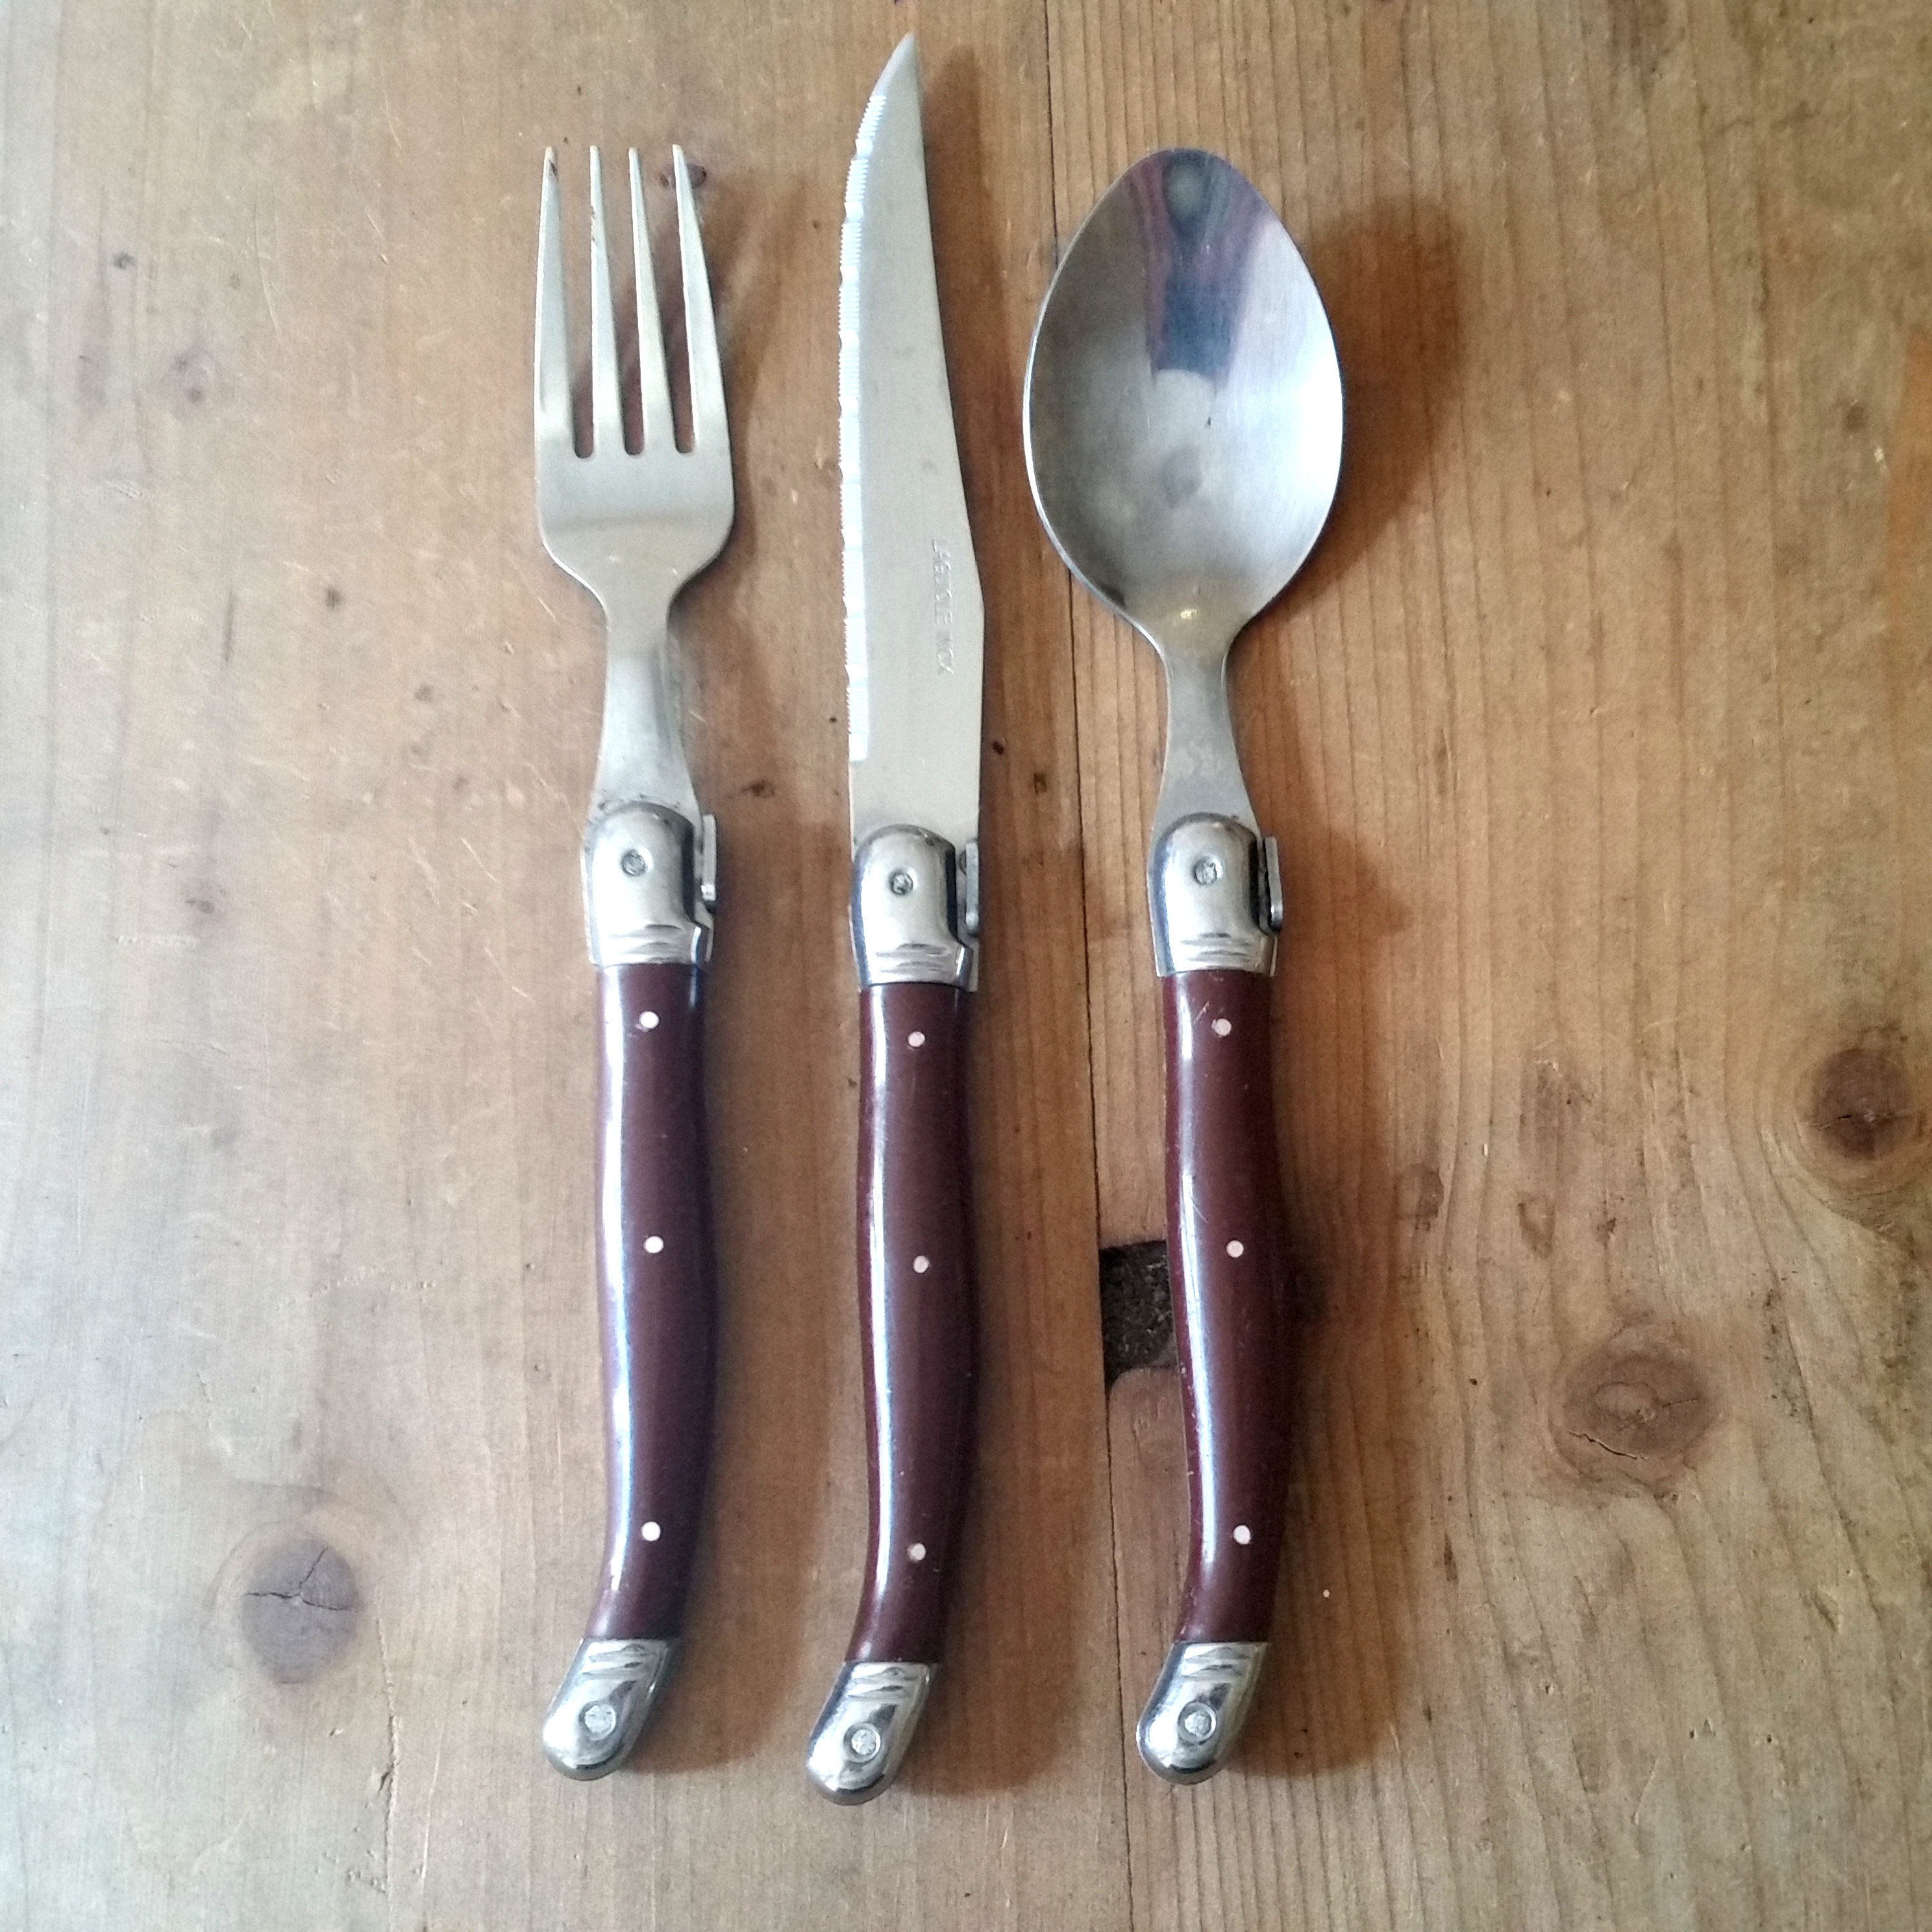 Beschrijving Banket Productiecentrum Vintage LAGUIOLE FRANS BESTEK set van mes vork en lepel met - Etsy Nederland